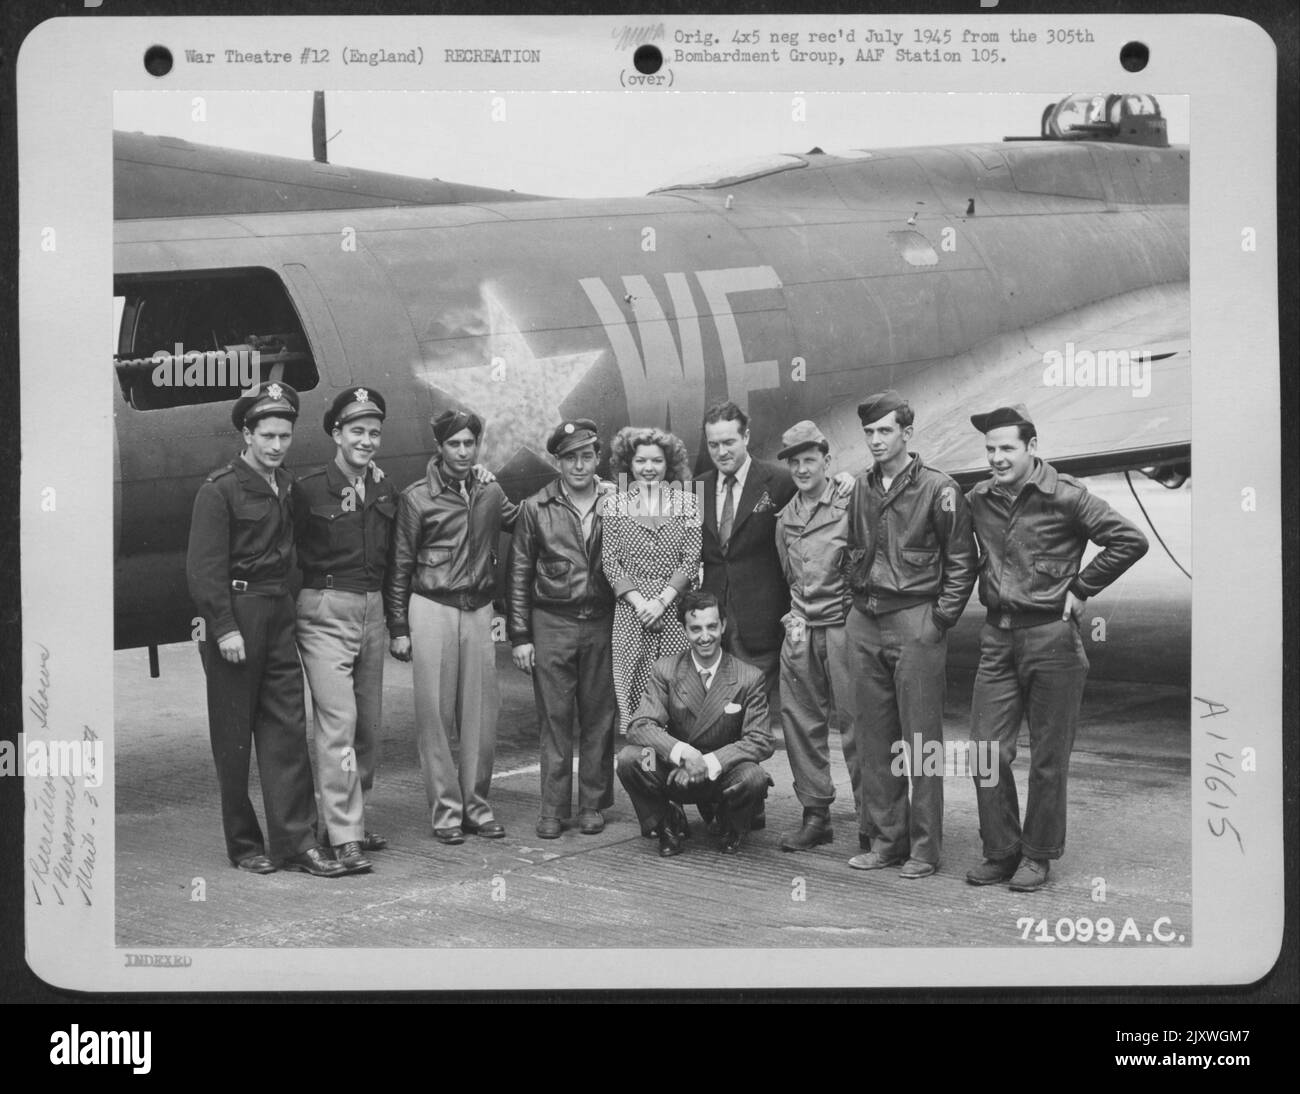 Frances Langford, Bob Hope et Tony Romano posent avec l'équipage du Boeing B-17 (A/C 242) du 305Th Bomb Group à la Station 105 en Angleterre. 5 juillet 1943. Banque D'Images